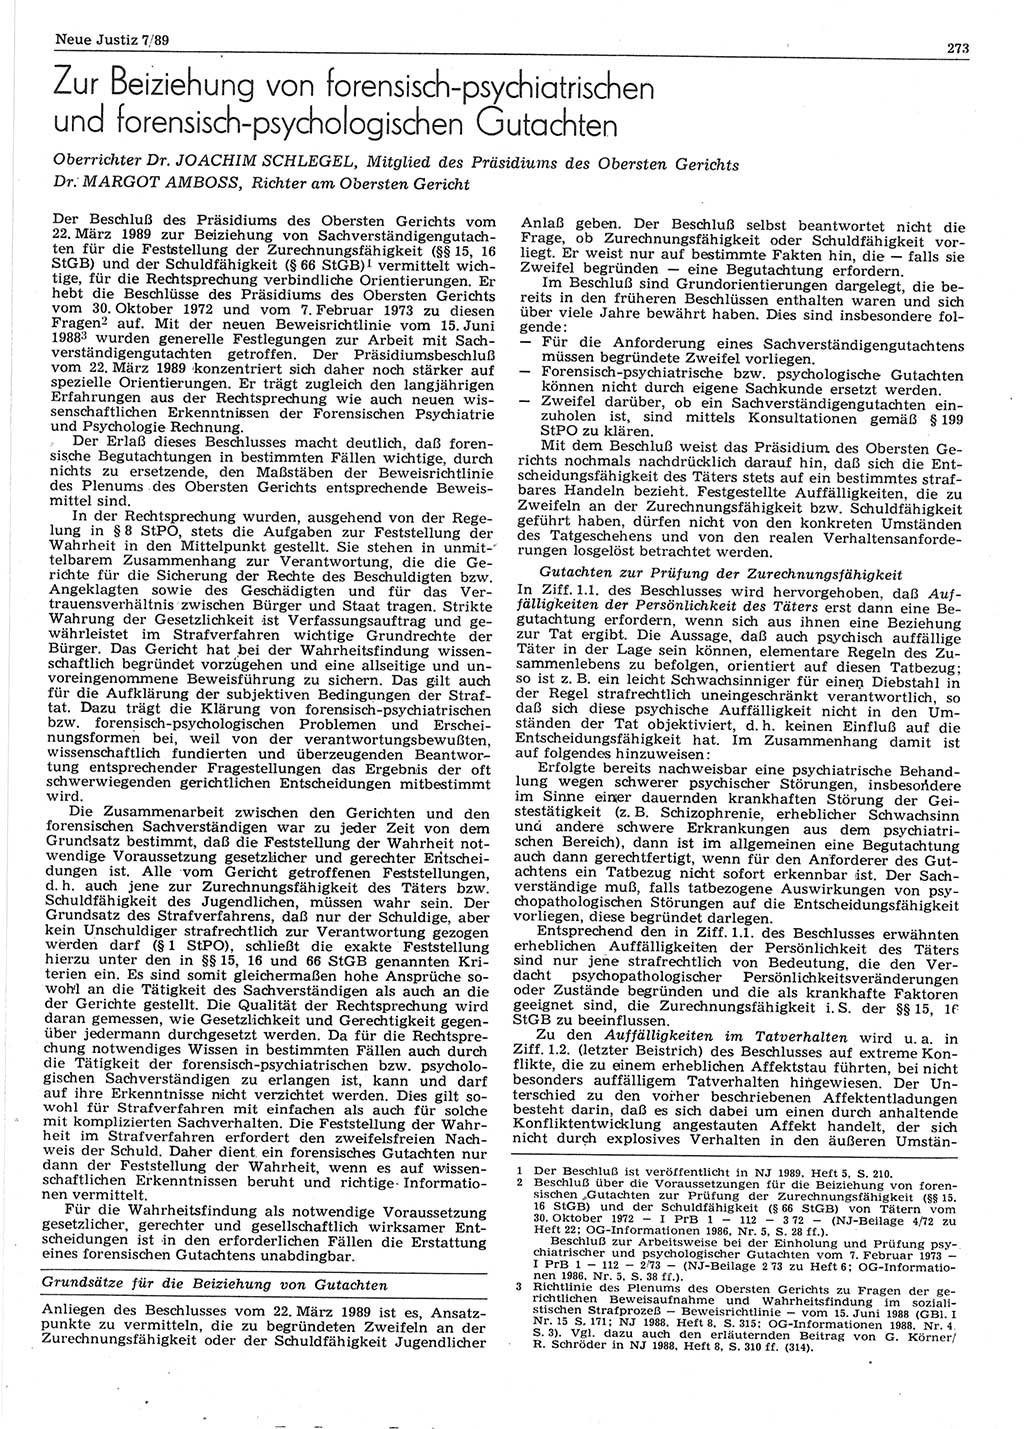 Neue Justiz (NJ), Zeitschrift für sozialistisches Recht und Gesetzlichkeit [Deutsche Demokratische Republik (DDR)], 43. Jahrgang 1989, Seite 273 (NJ DDR 1989, S. 273)